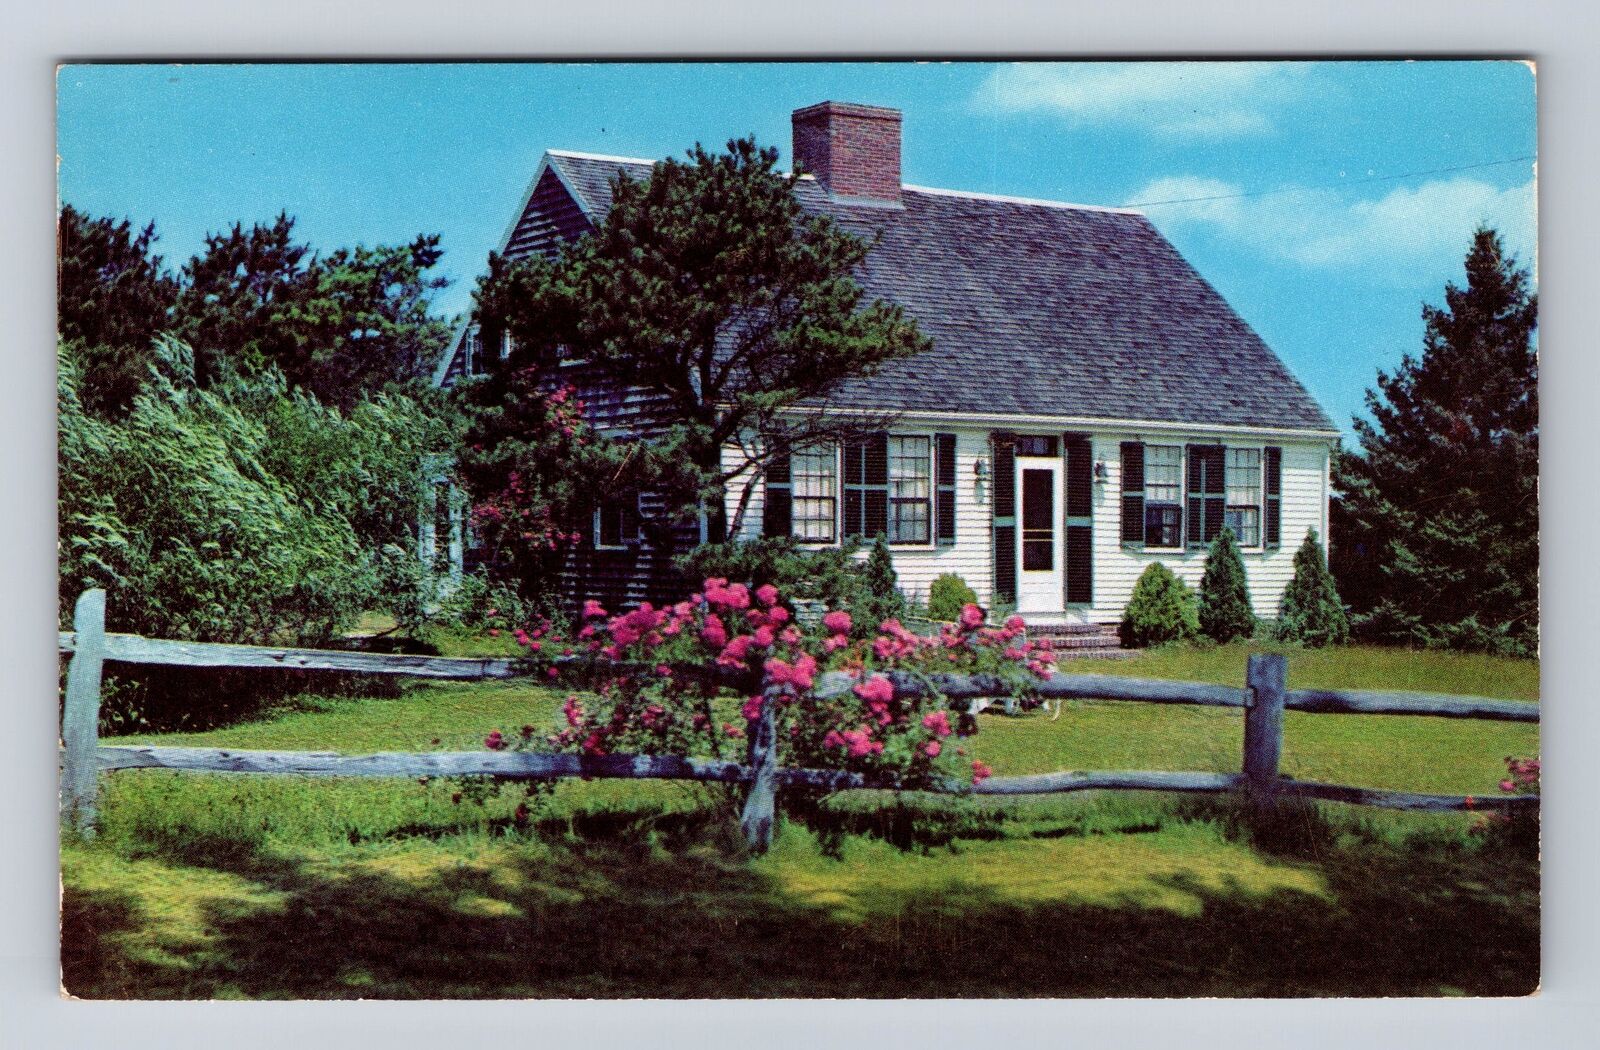 Cape Cod MA-Massachusetts, Typical Cape Cod House, Antique, Vintage Postcard